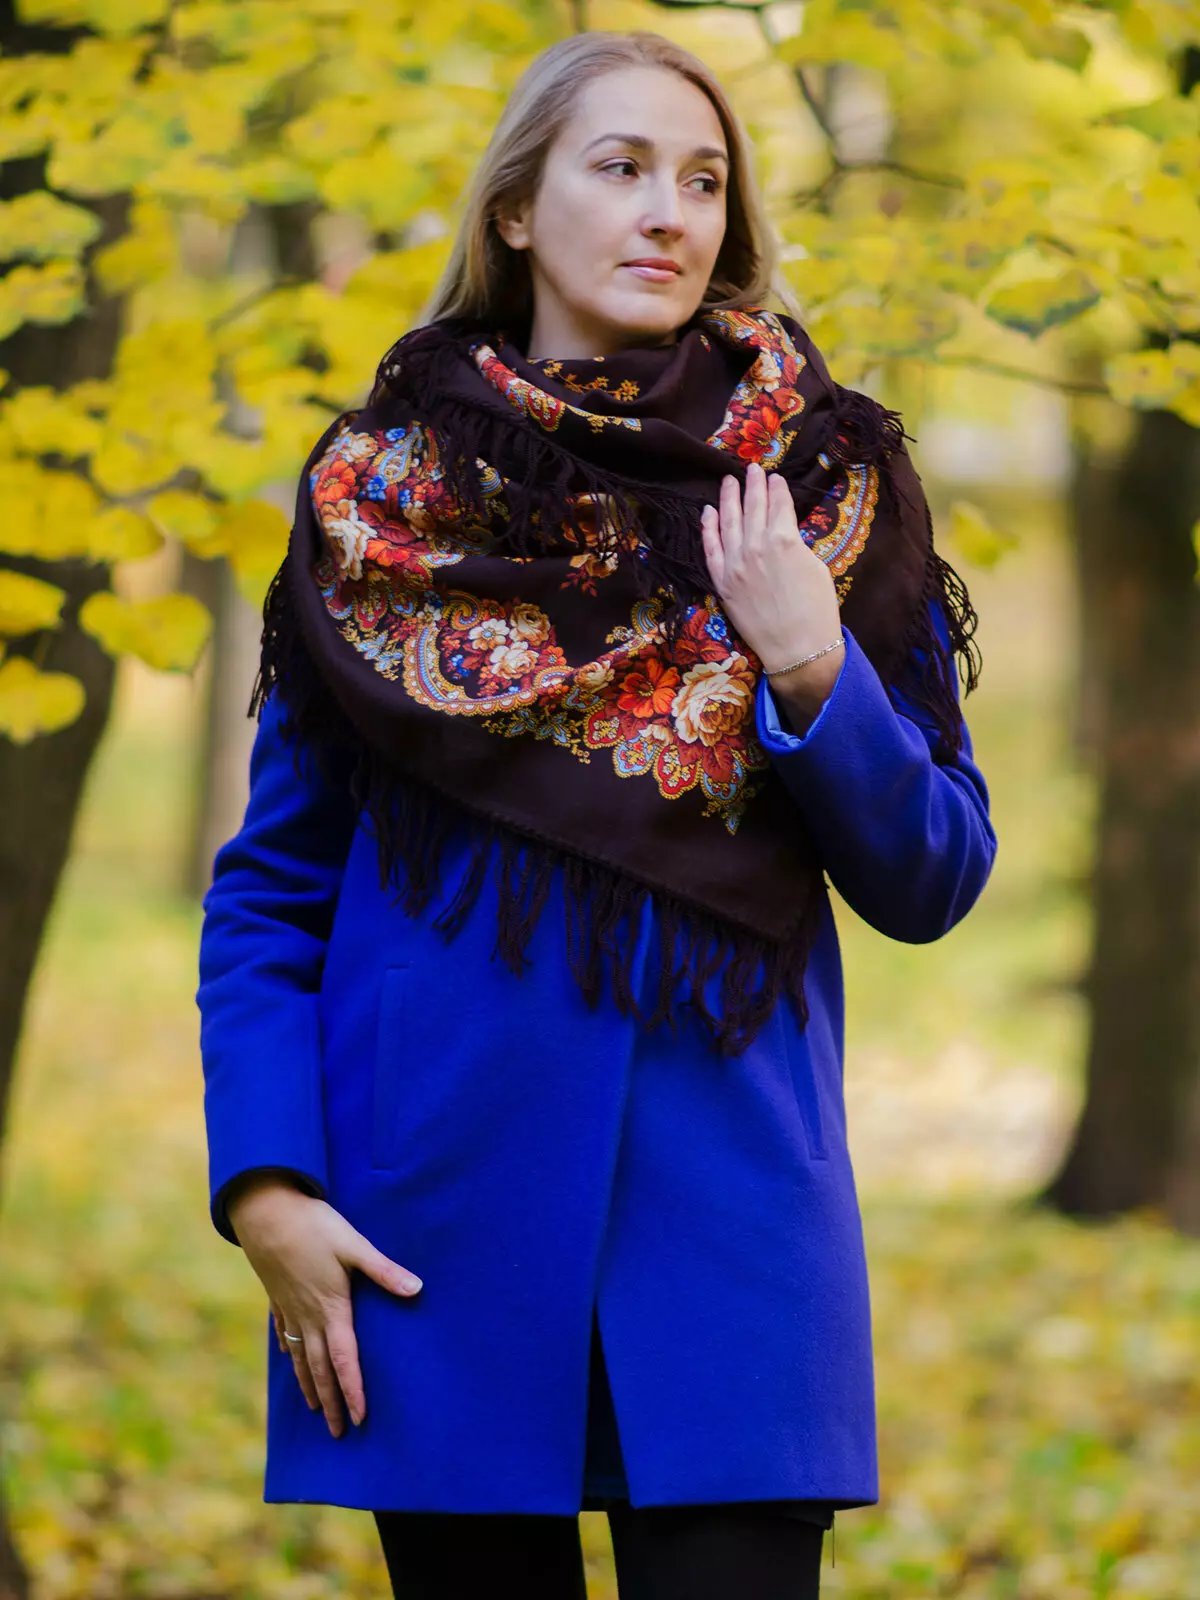 Mantel von Pavloposad-Muschaten (29 Fotos): Binden Sie ein pavelopospalstiges Taschentuch auf einen Mantel 484_22